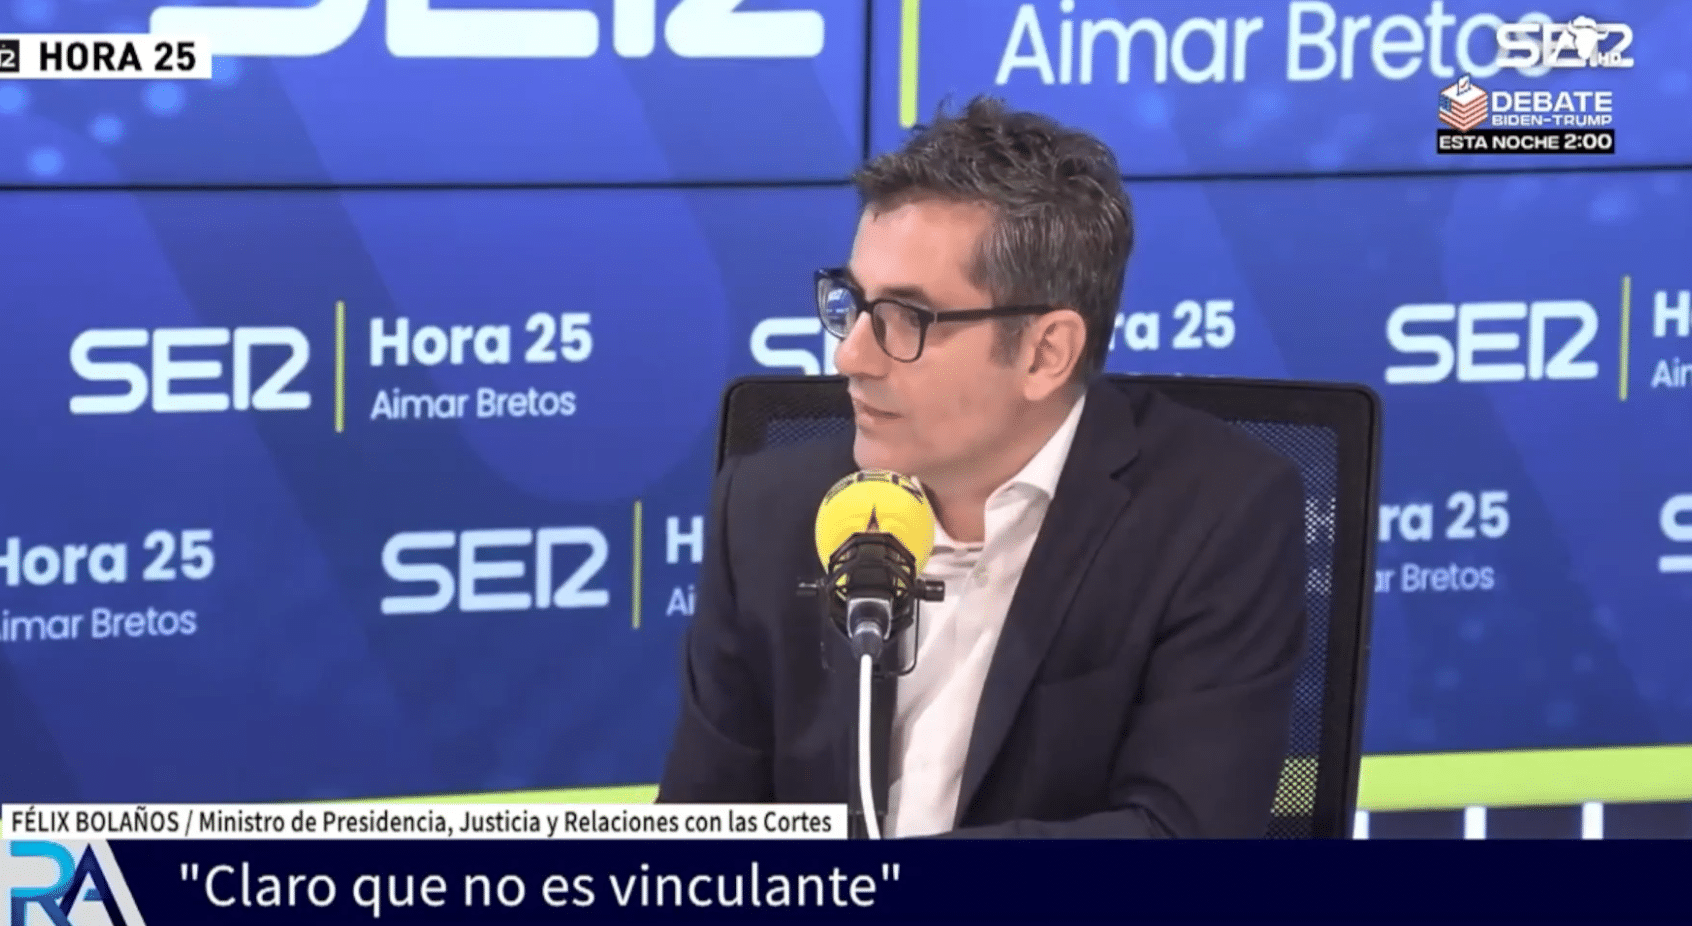 Primeras discrepancias sobre la reforma del CGPJ: Feijóo y Bolaños discuten sobre si la elección de los vocales es o no vinculante